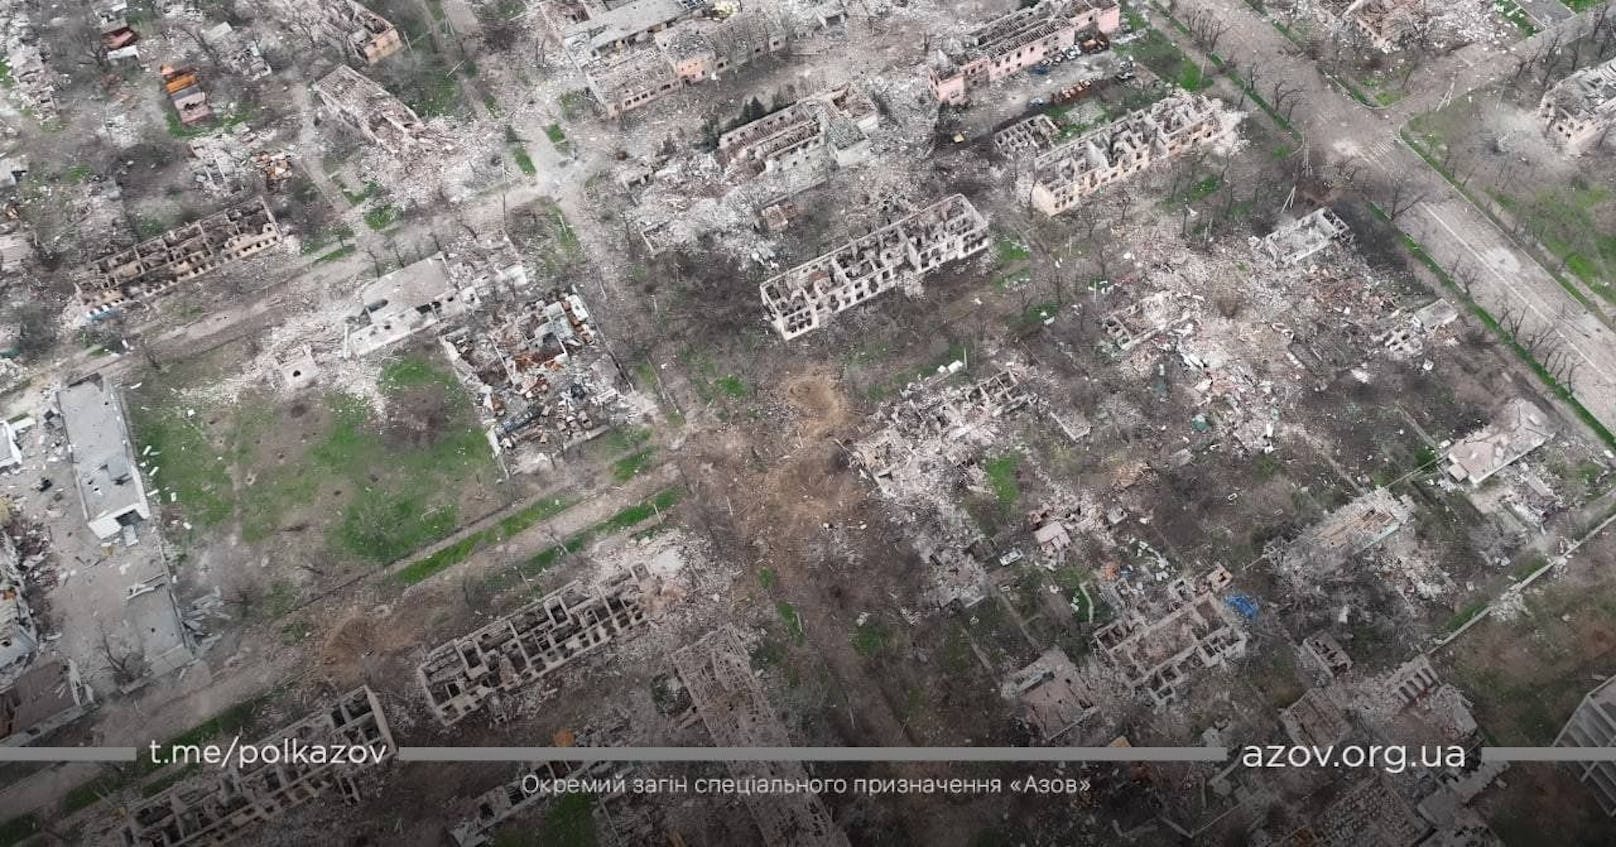 Die Lage in der Hafenstadt Mariupol spitzt sich unterdessen weiter zu. Bilder zeigen das gewaltige Ausmaß der Zerstörung.